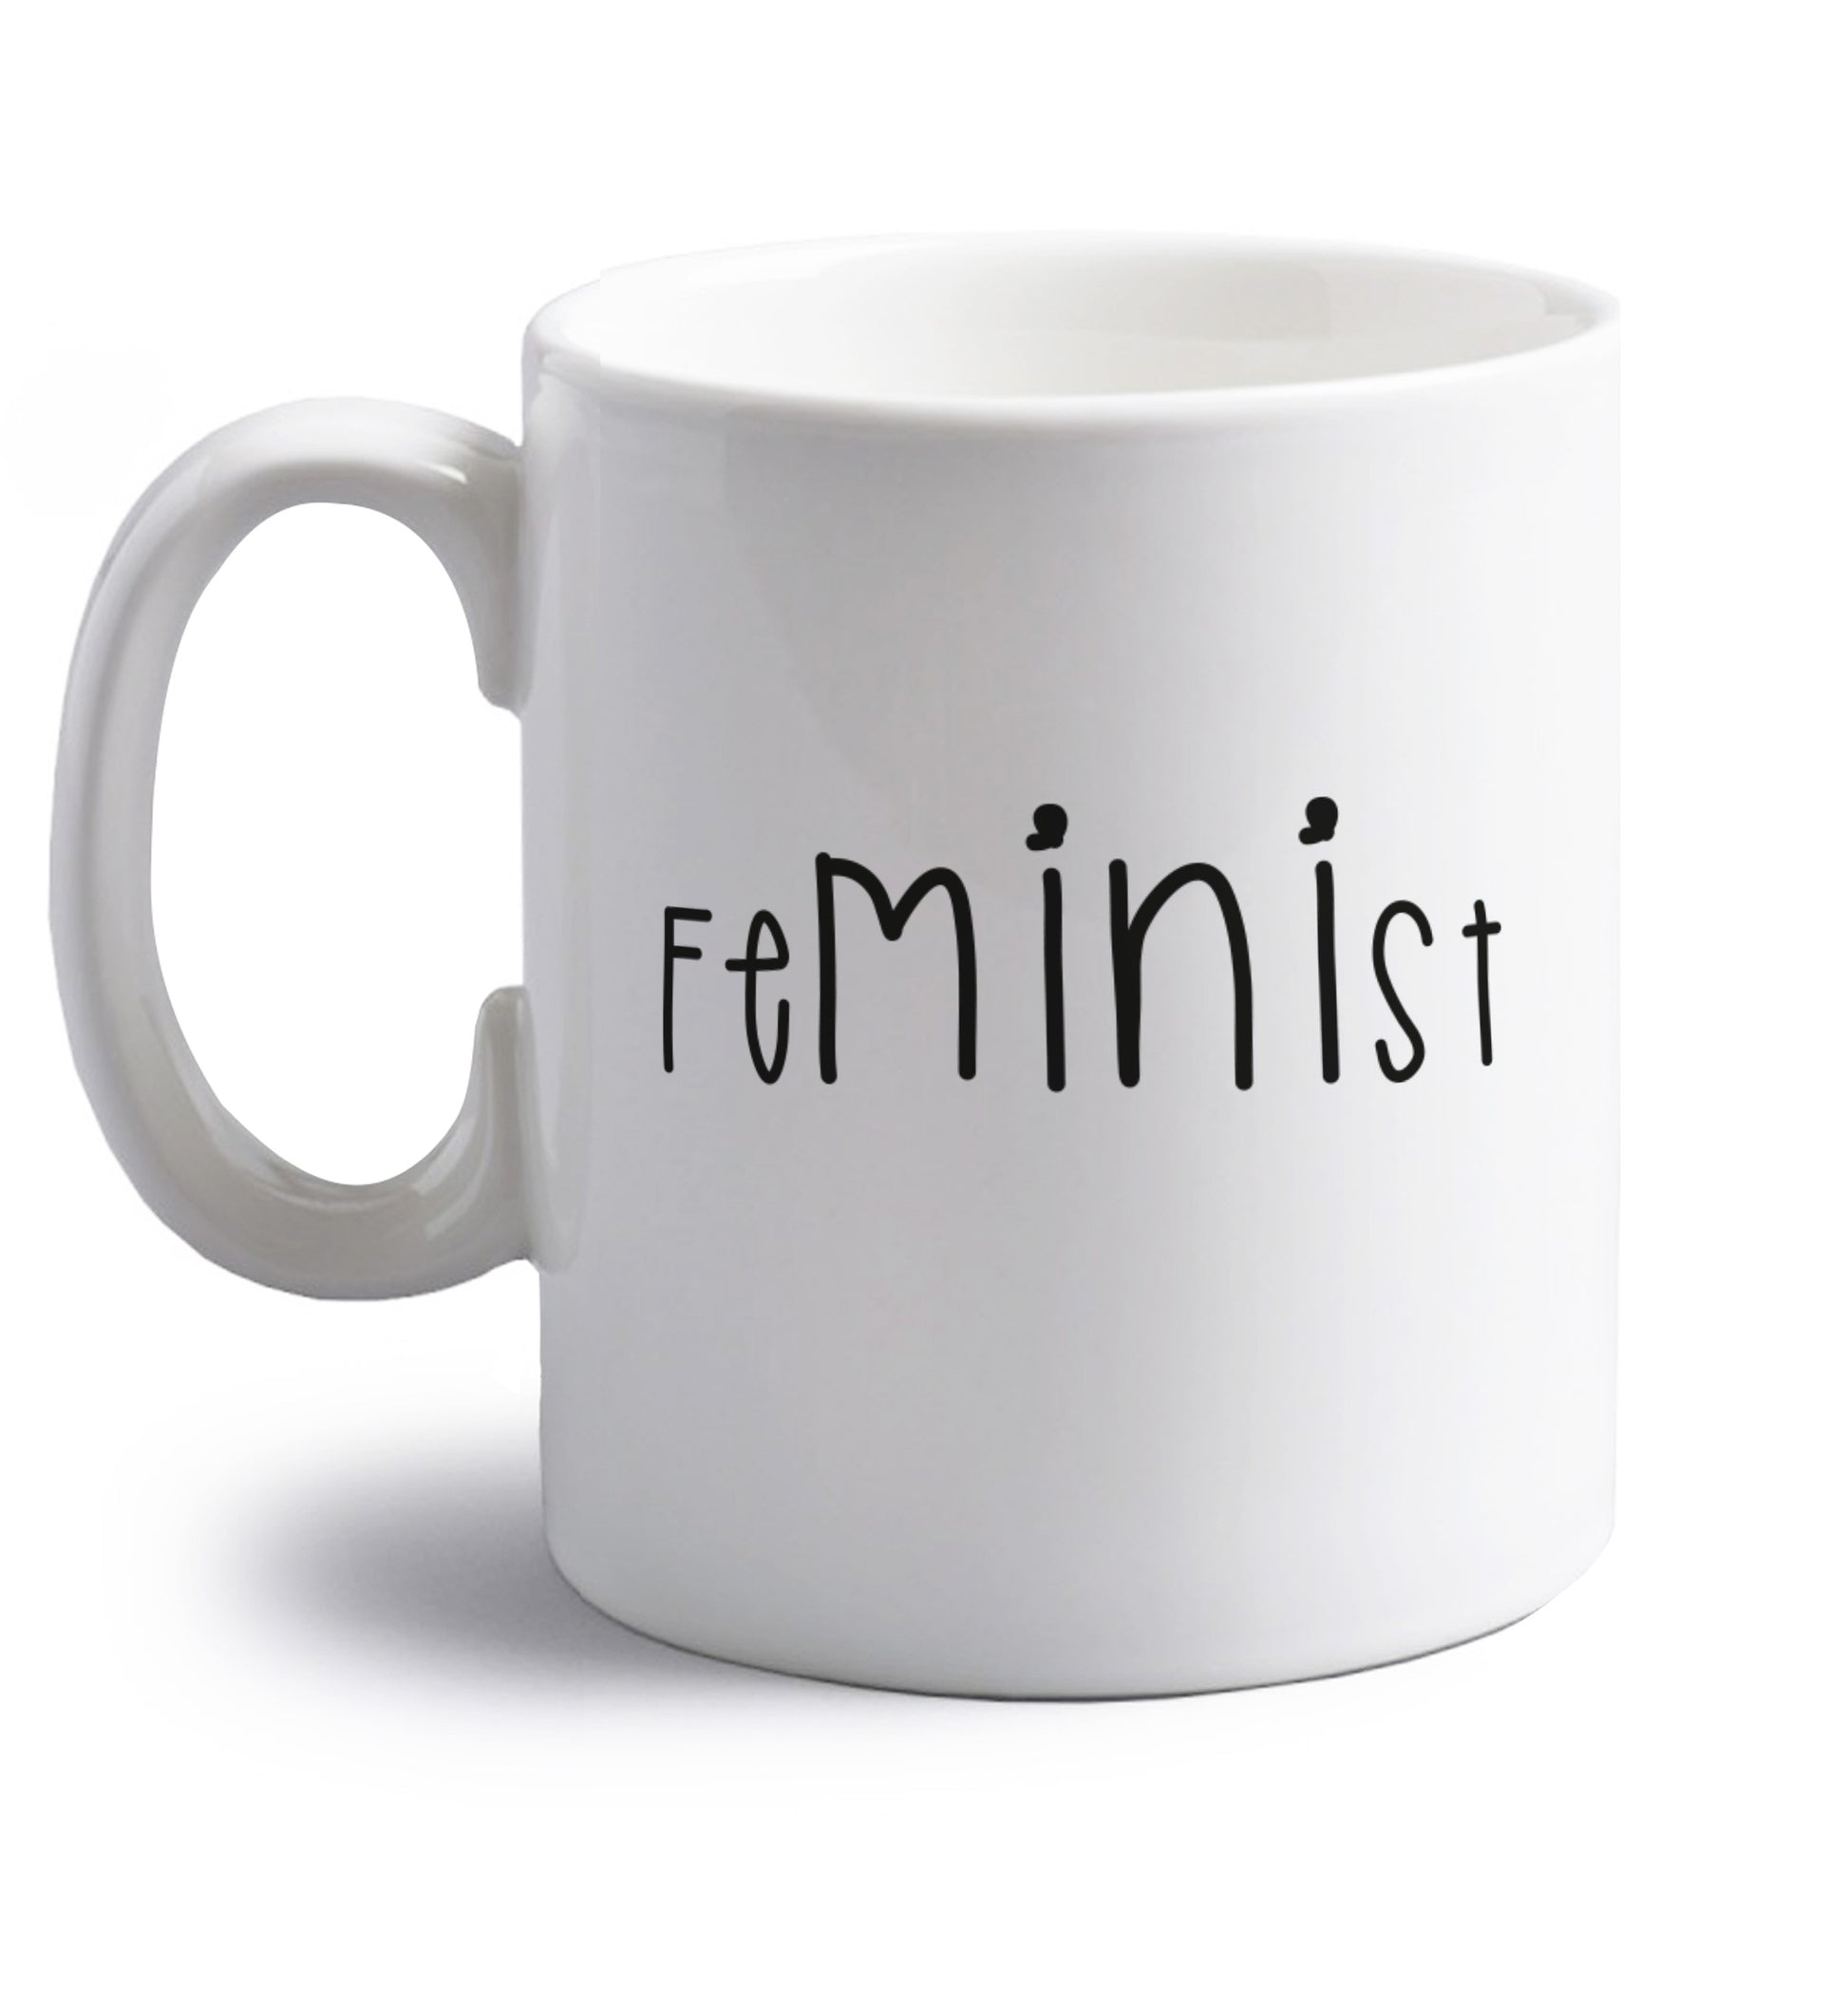 FeMINIst right handed white ceramic mug 